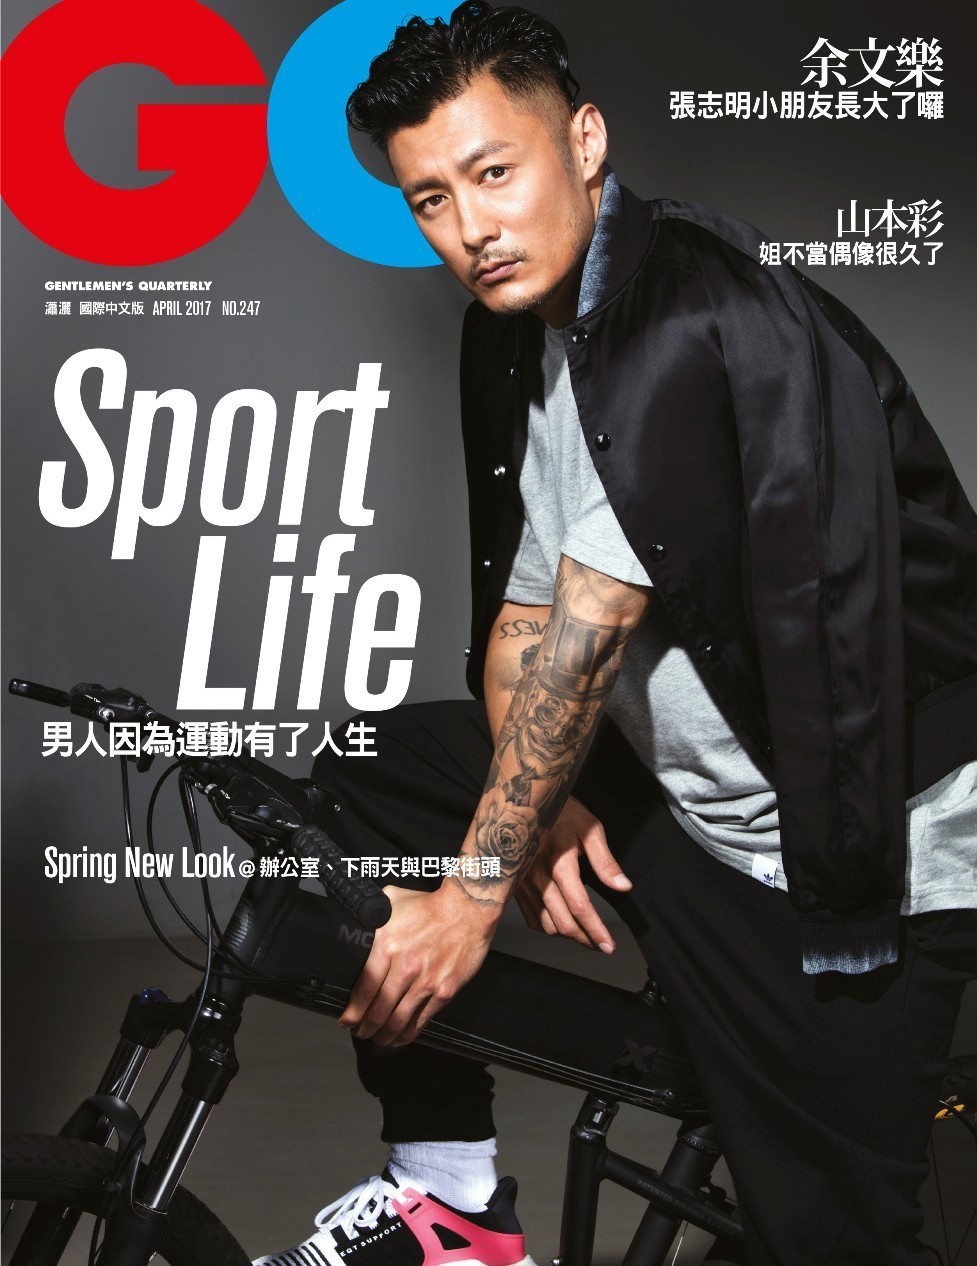 六叔余文乐本周也登上了台湾版《gq》4月刊封面.